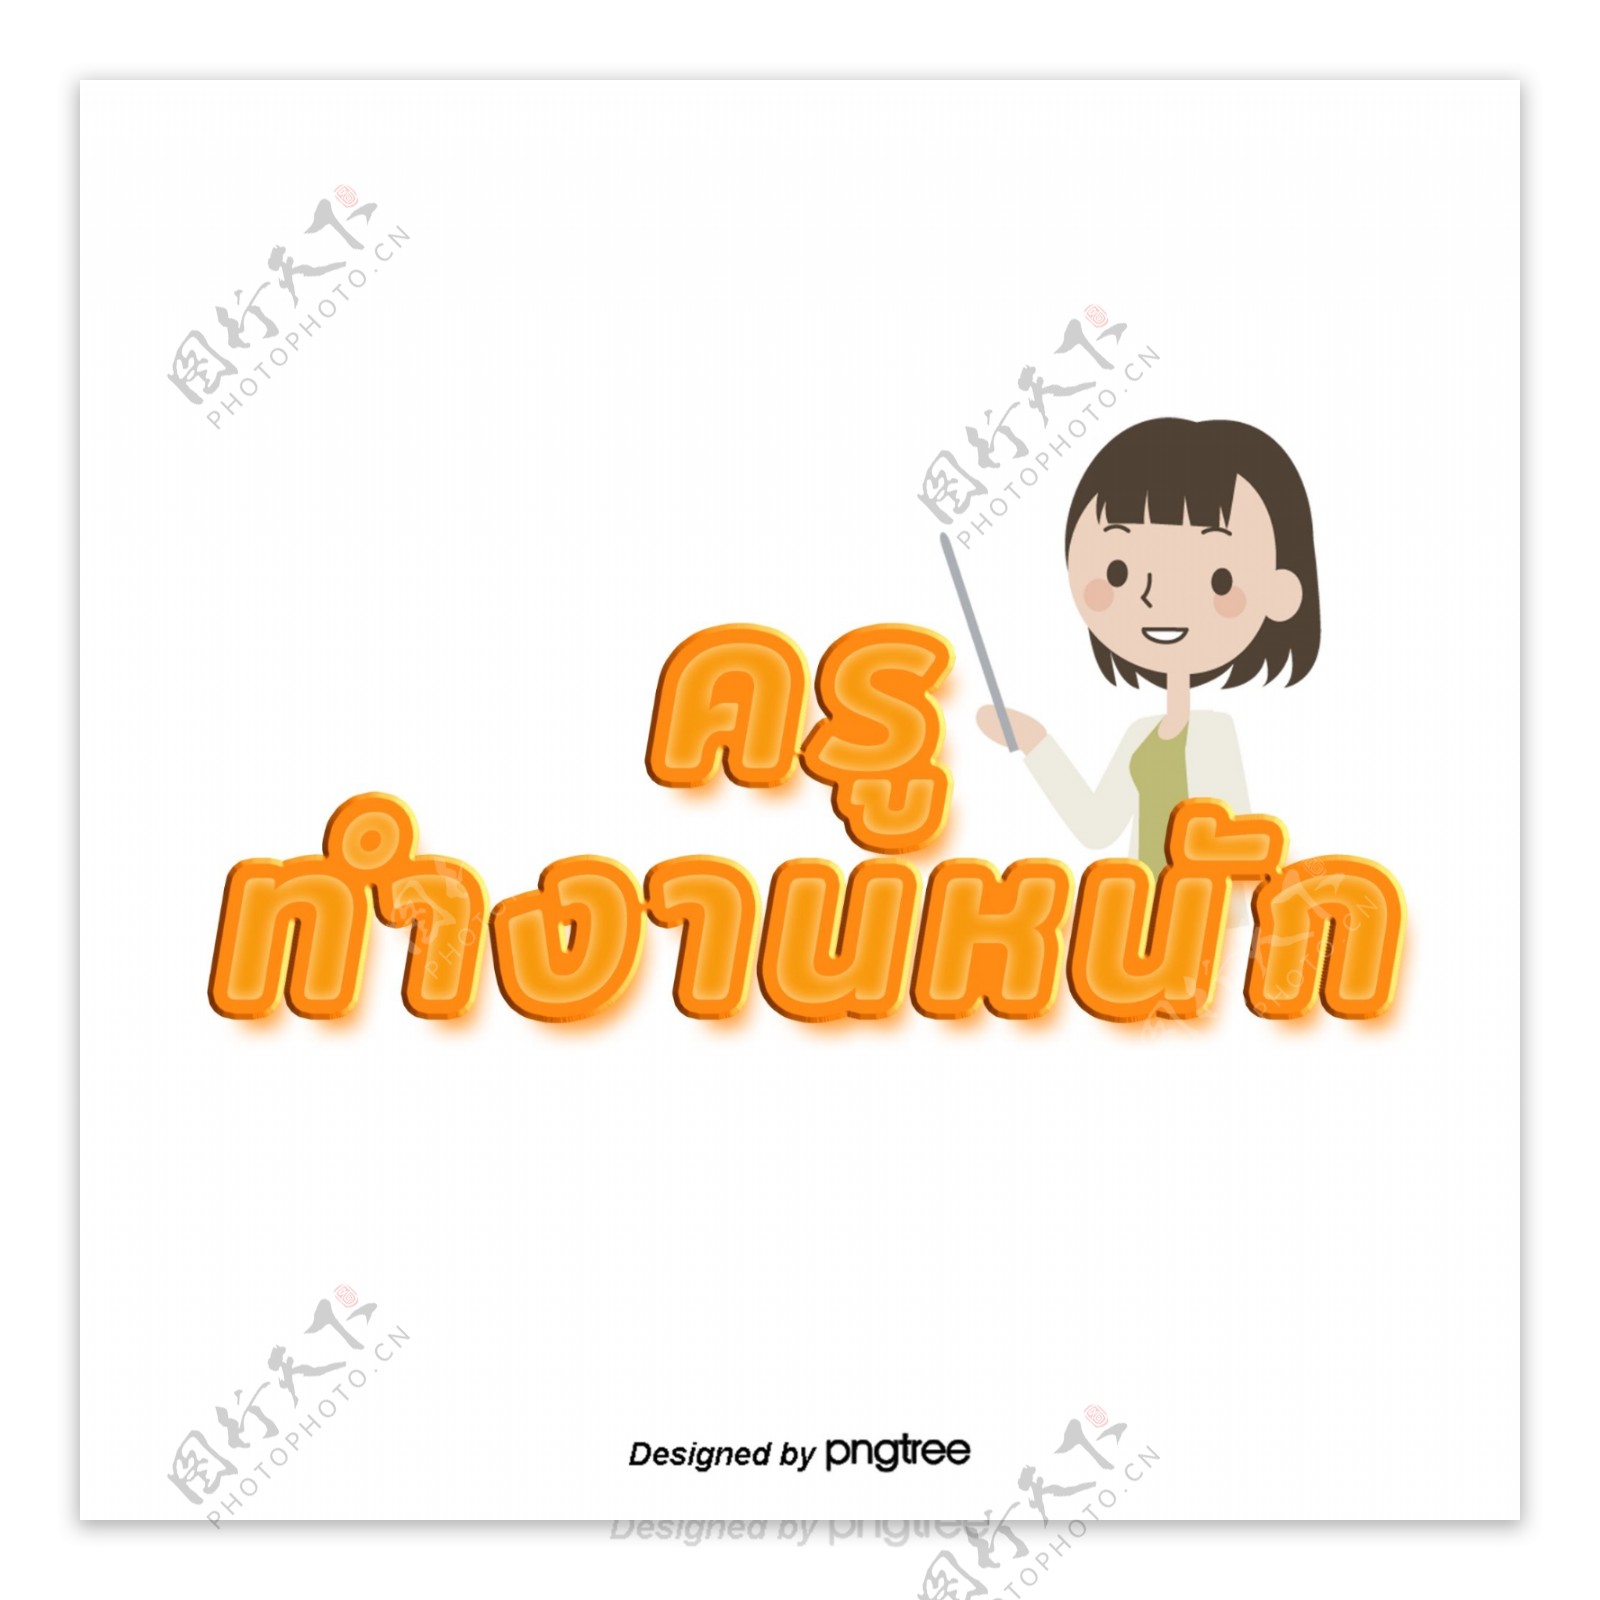 橙色字体字体泰国教师努力工作